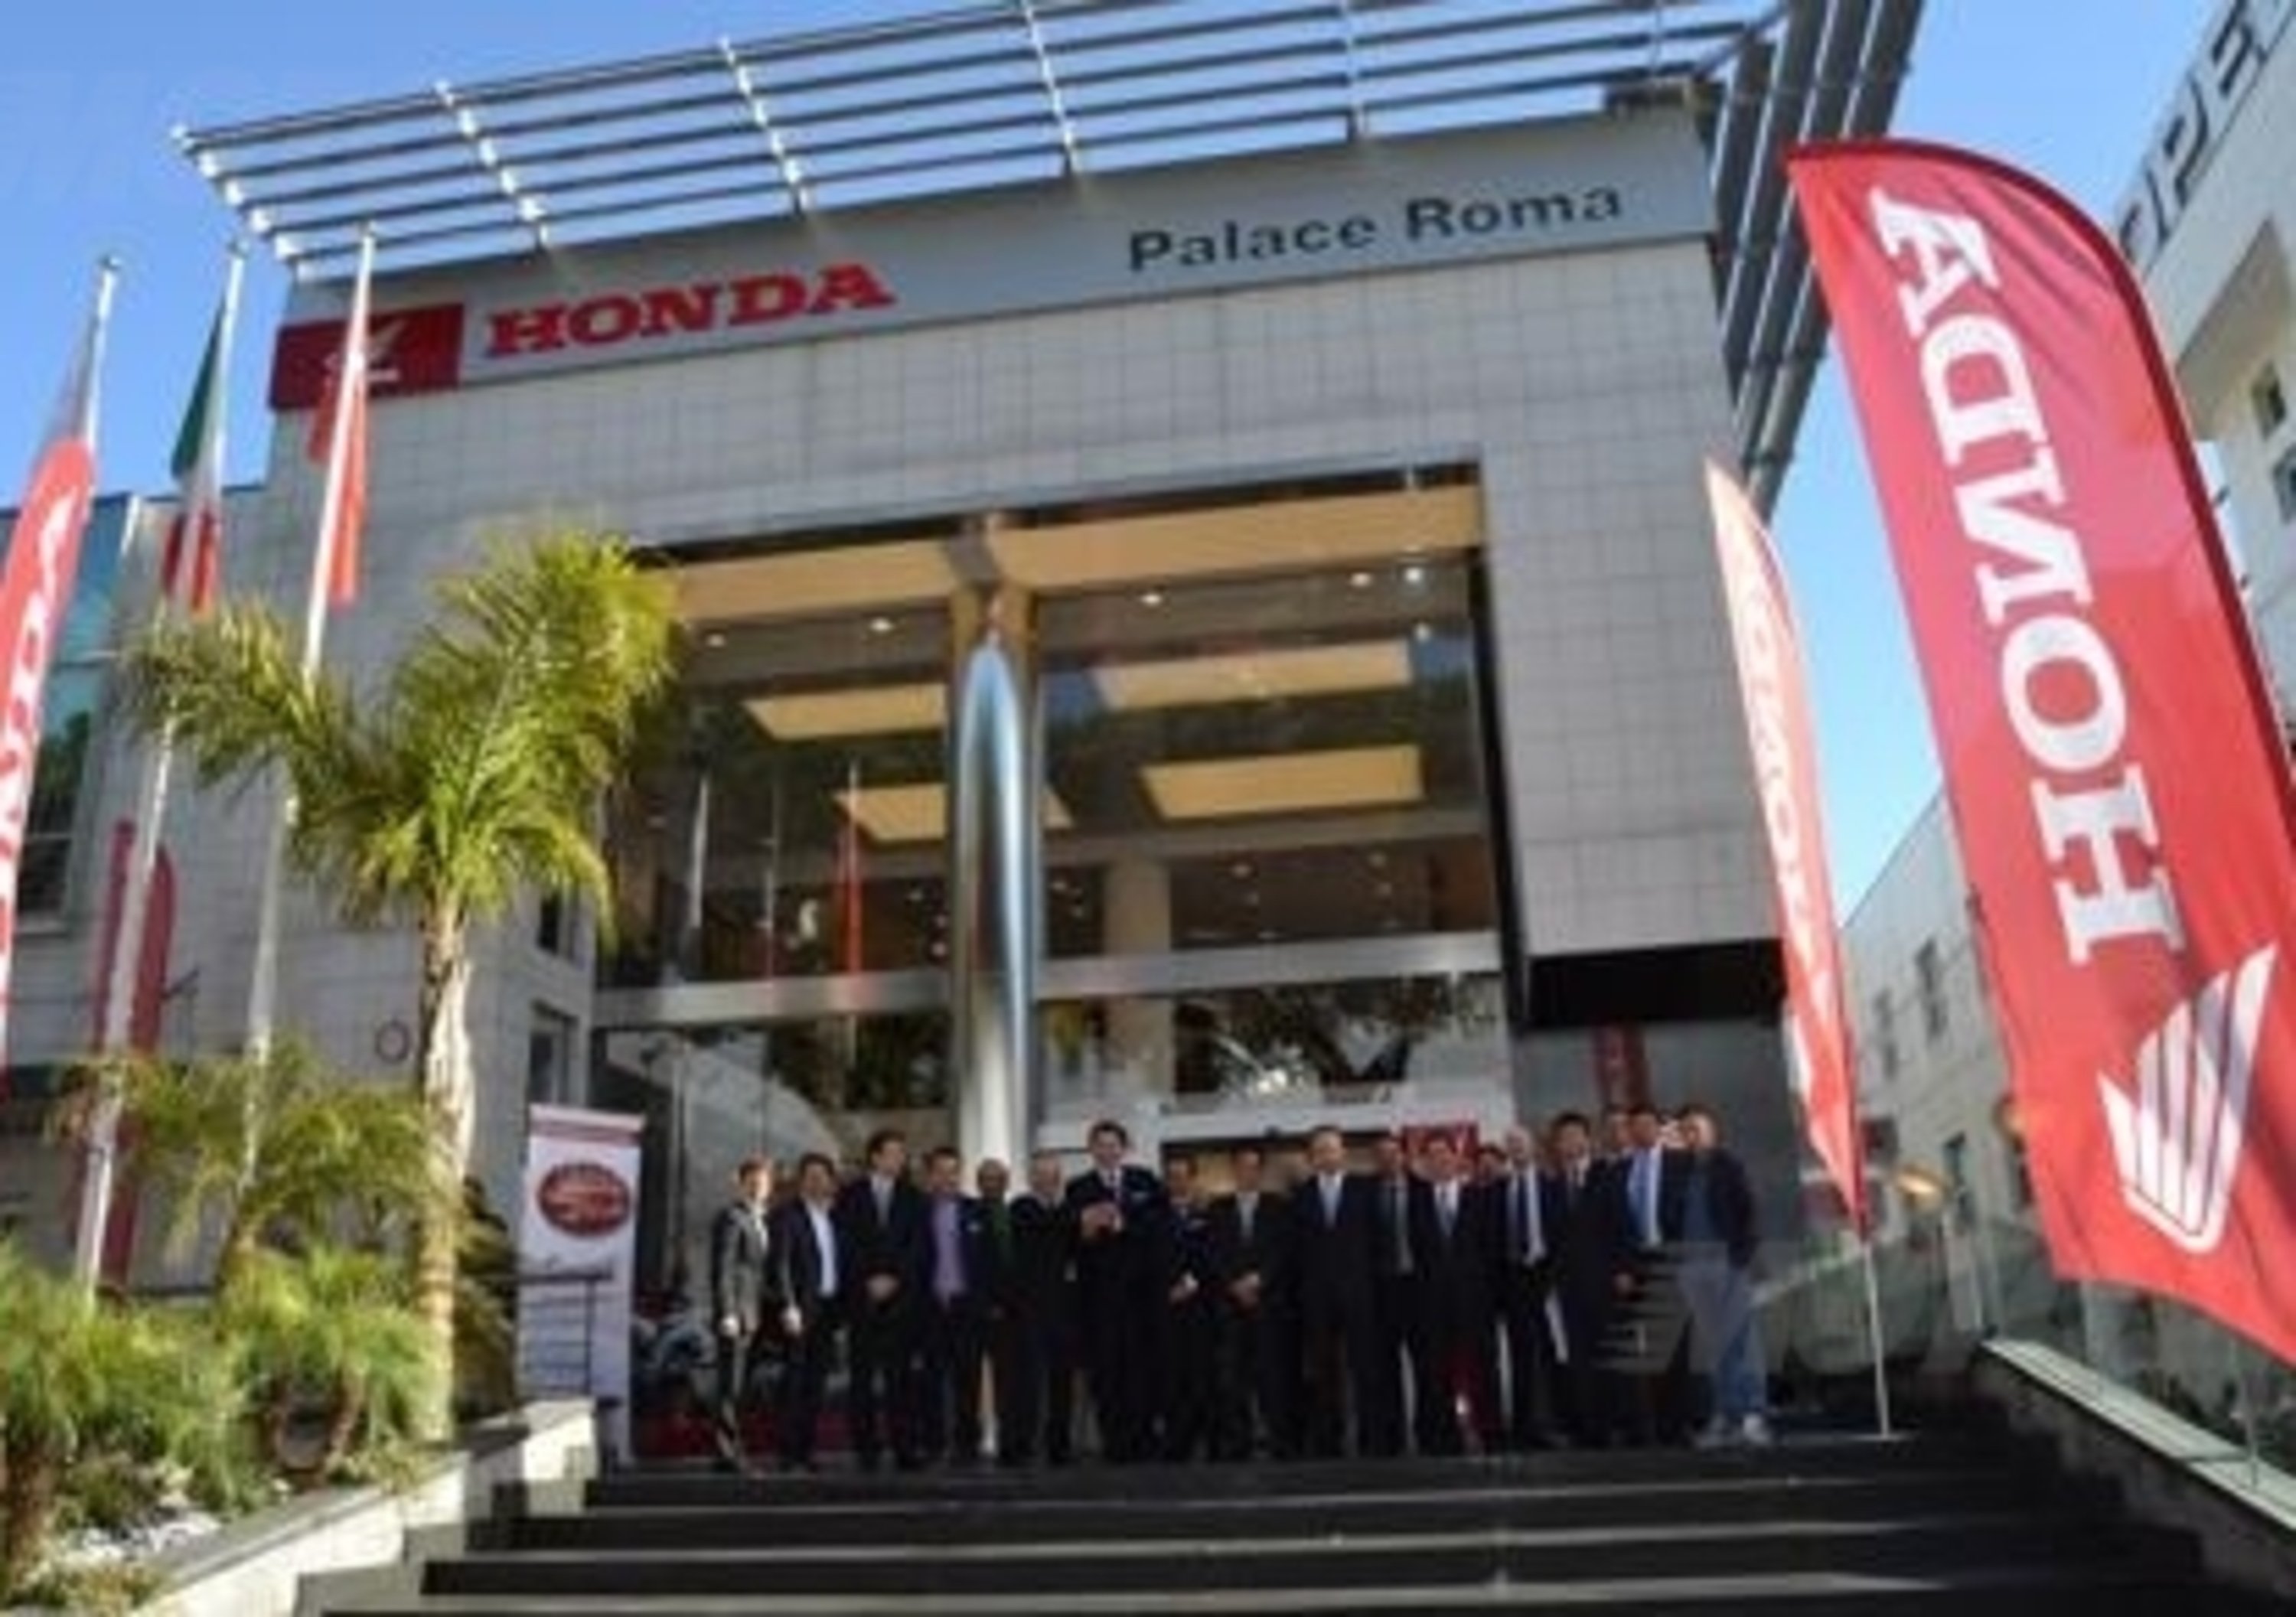 Honda Palace Roma: &quot;La pi&ugrave; bella concessionaria Honda al mondo&quot;